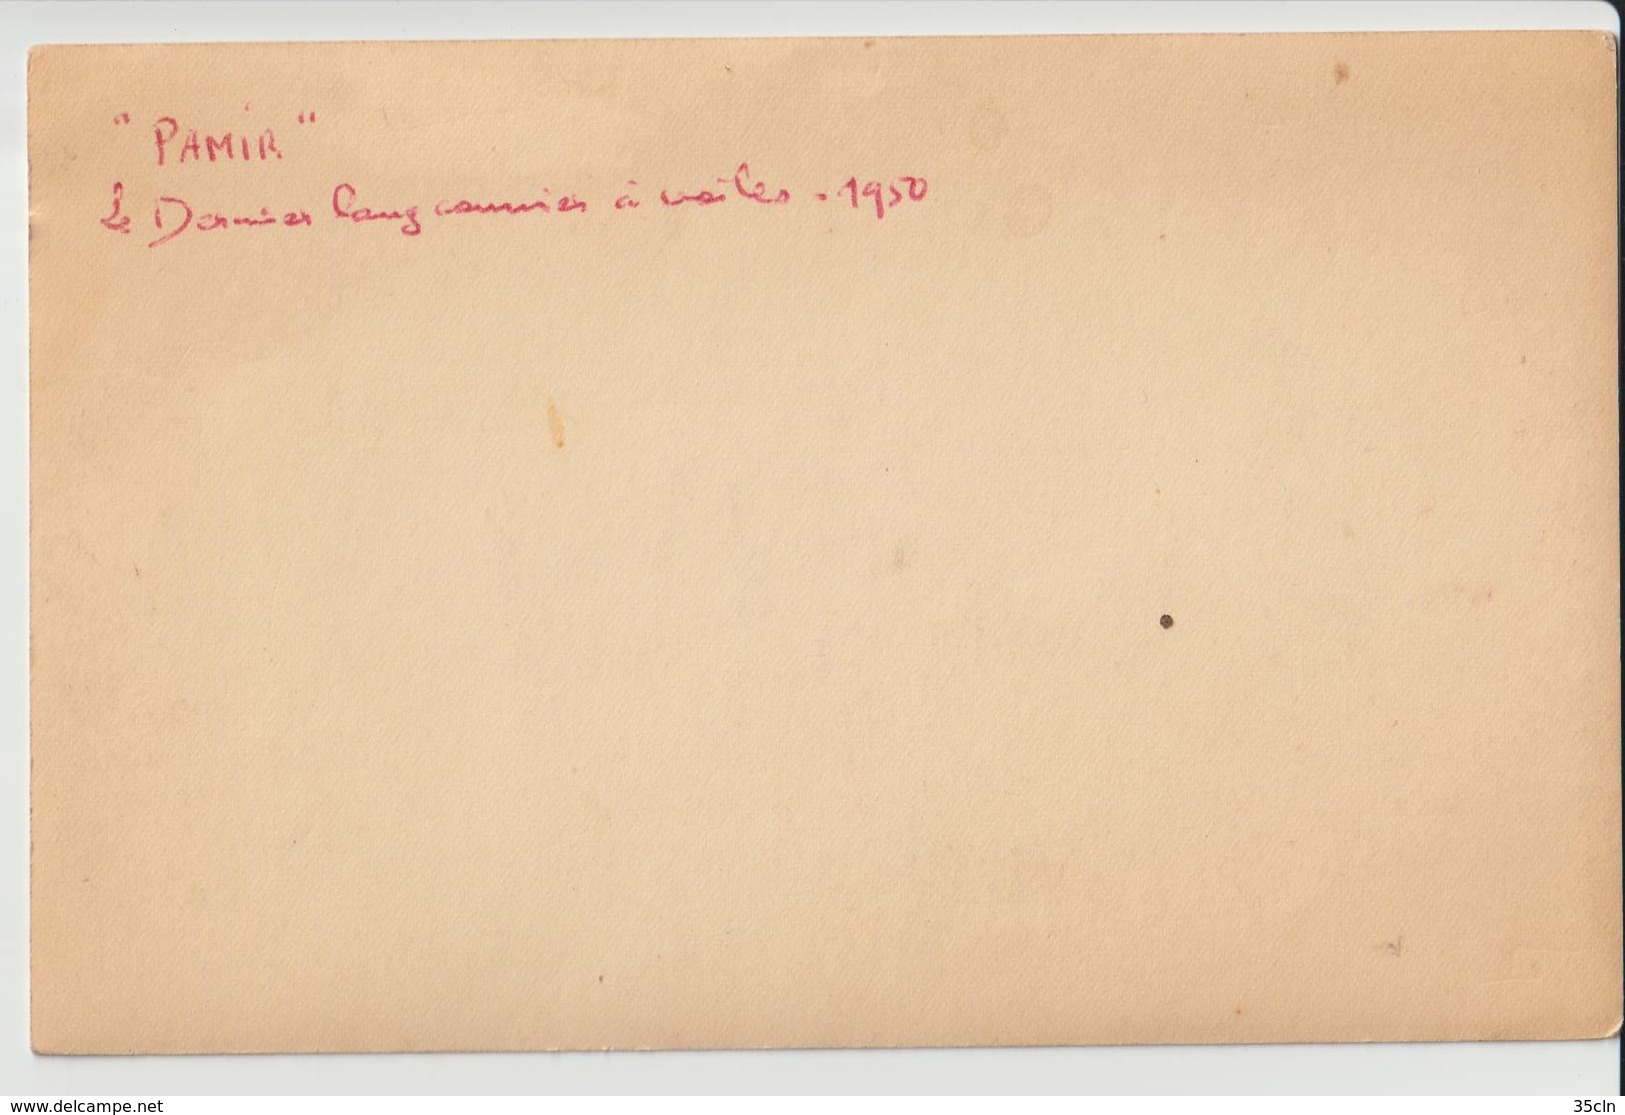 PAMIR - Carte Photo D'un Des Derniers Longs Courriers à Voile ( Datée 1950 Au Verso ). - Veleros